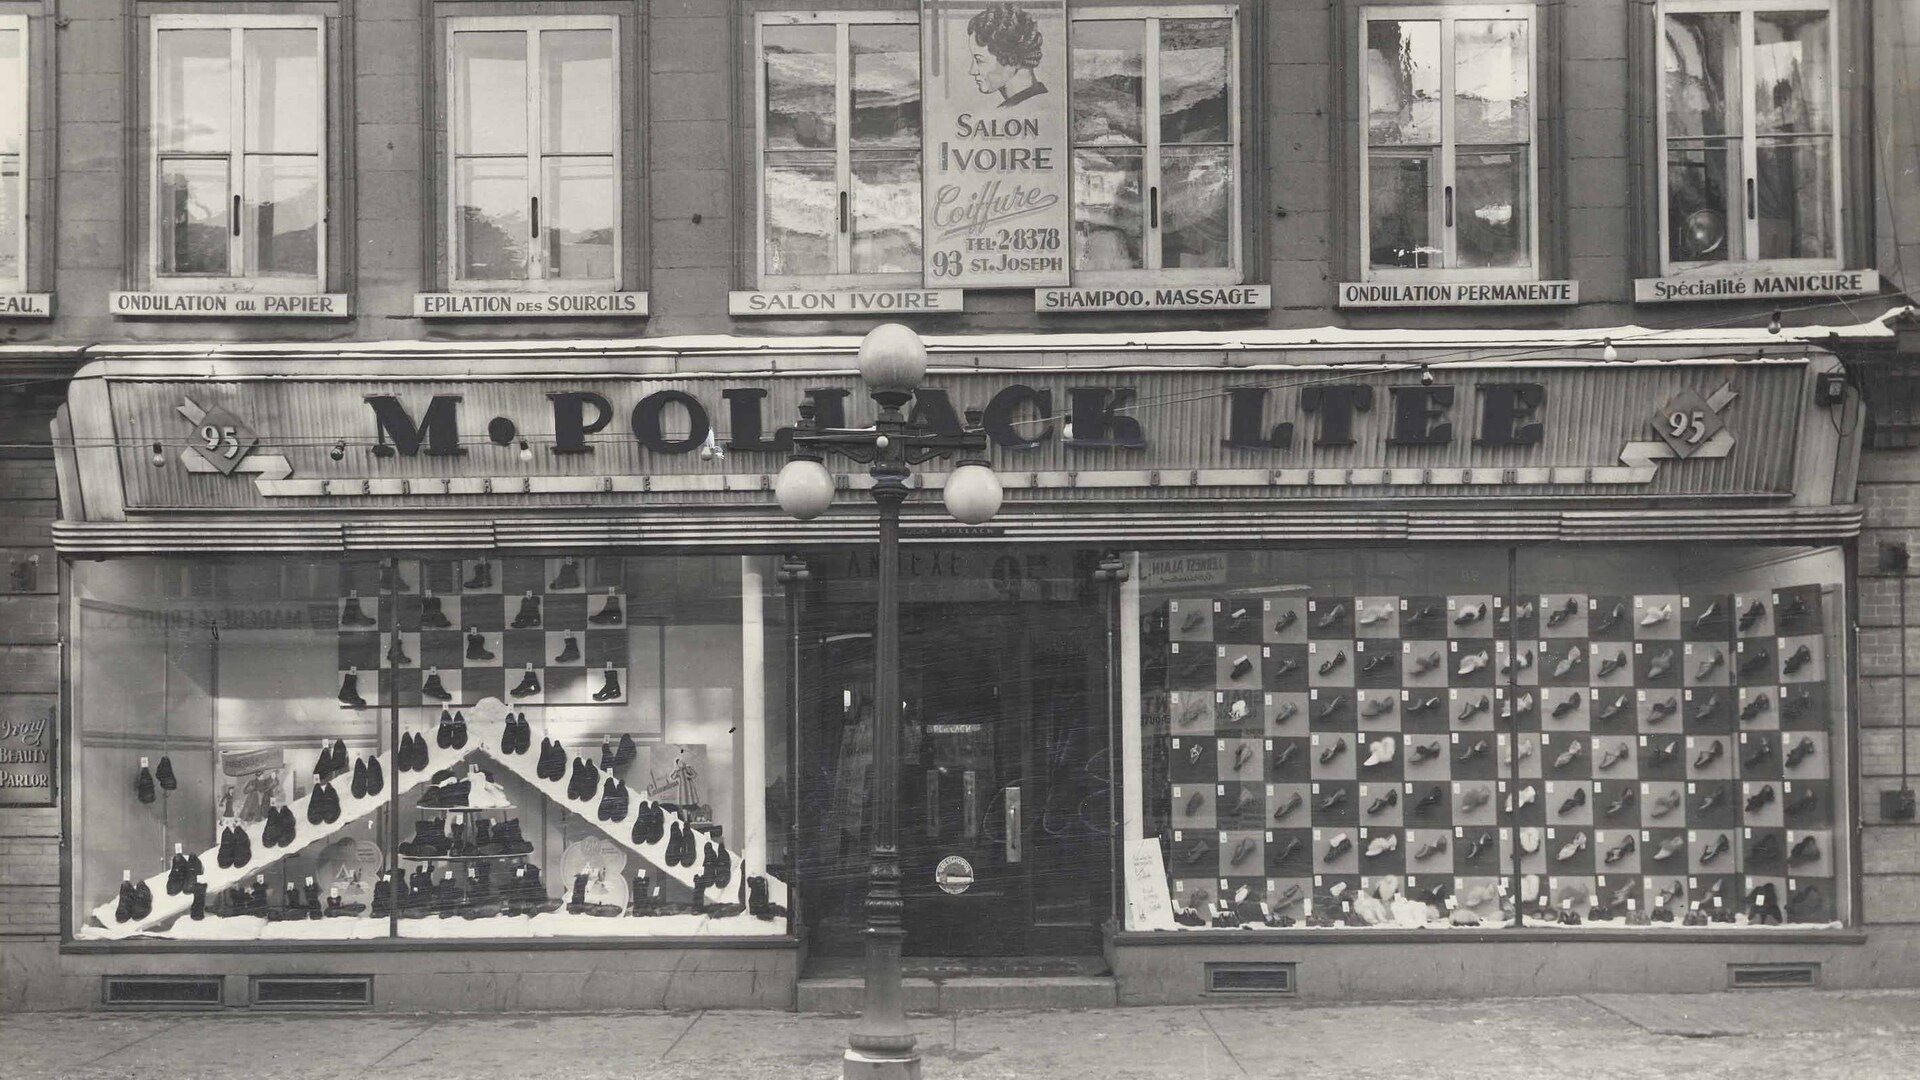 La façade du magasin Pollack de la rue Saint-Joseph avant l'agrandissement de 1930. On voit des souliers inventivement alignés de façon géométrique dans les deux vitrines, comme des pièces sur un échiquier.